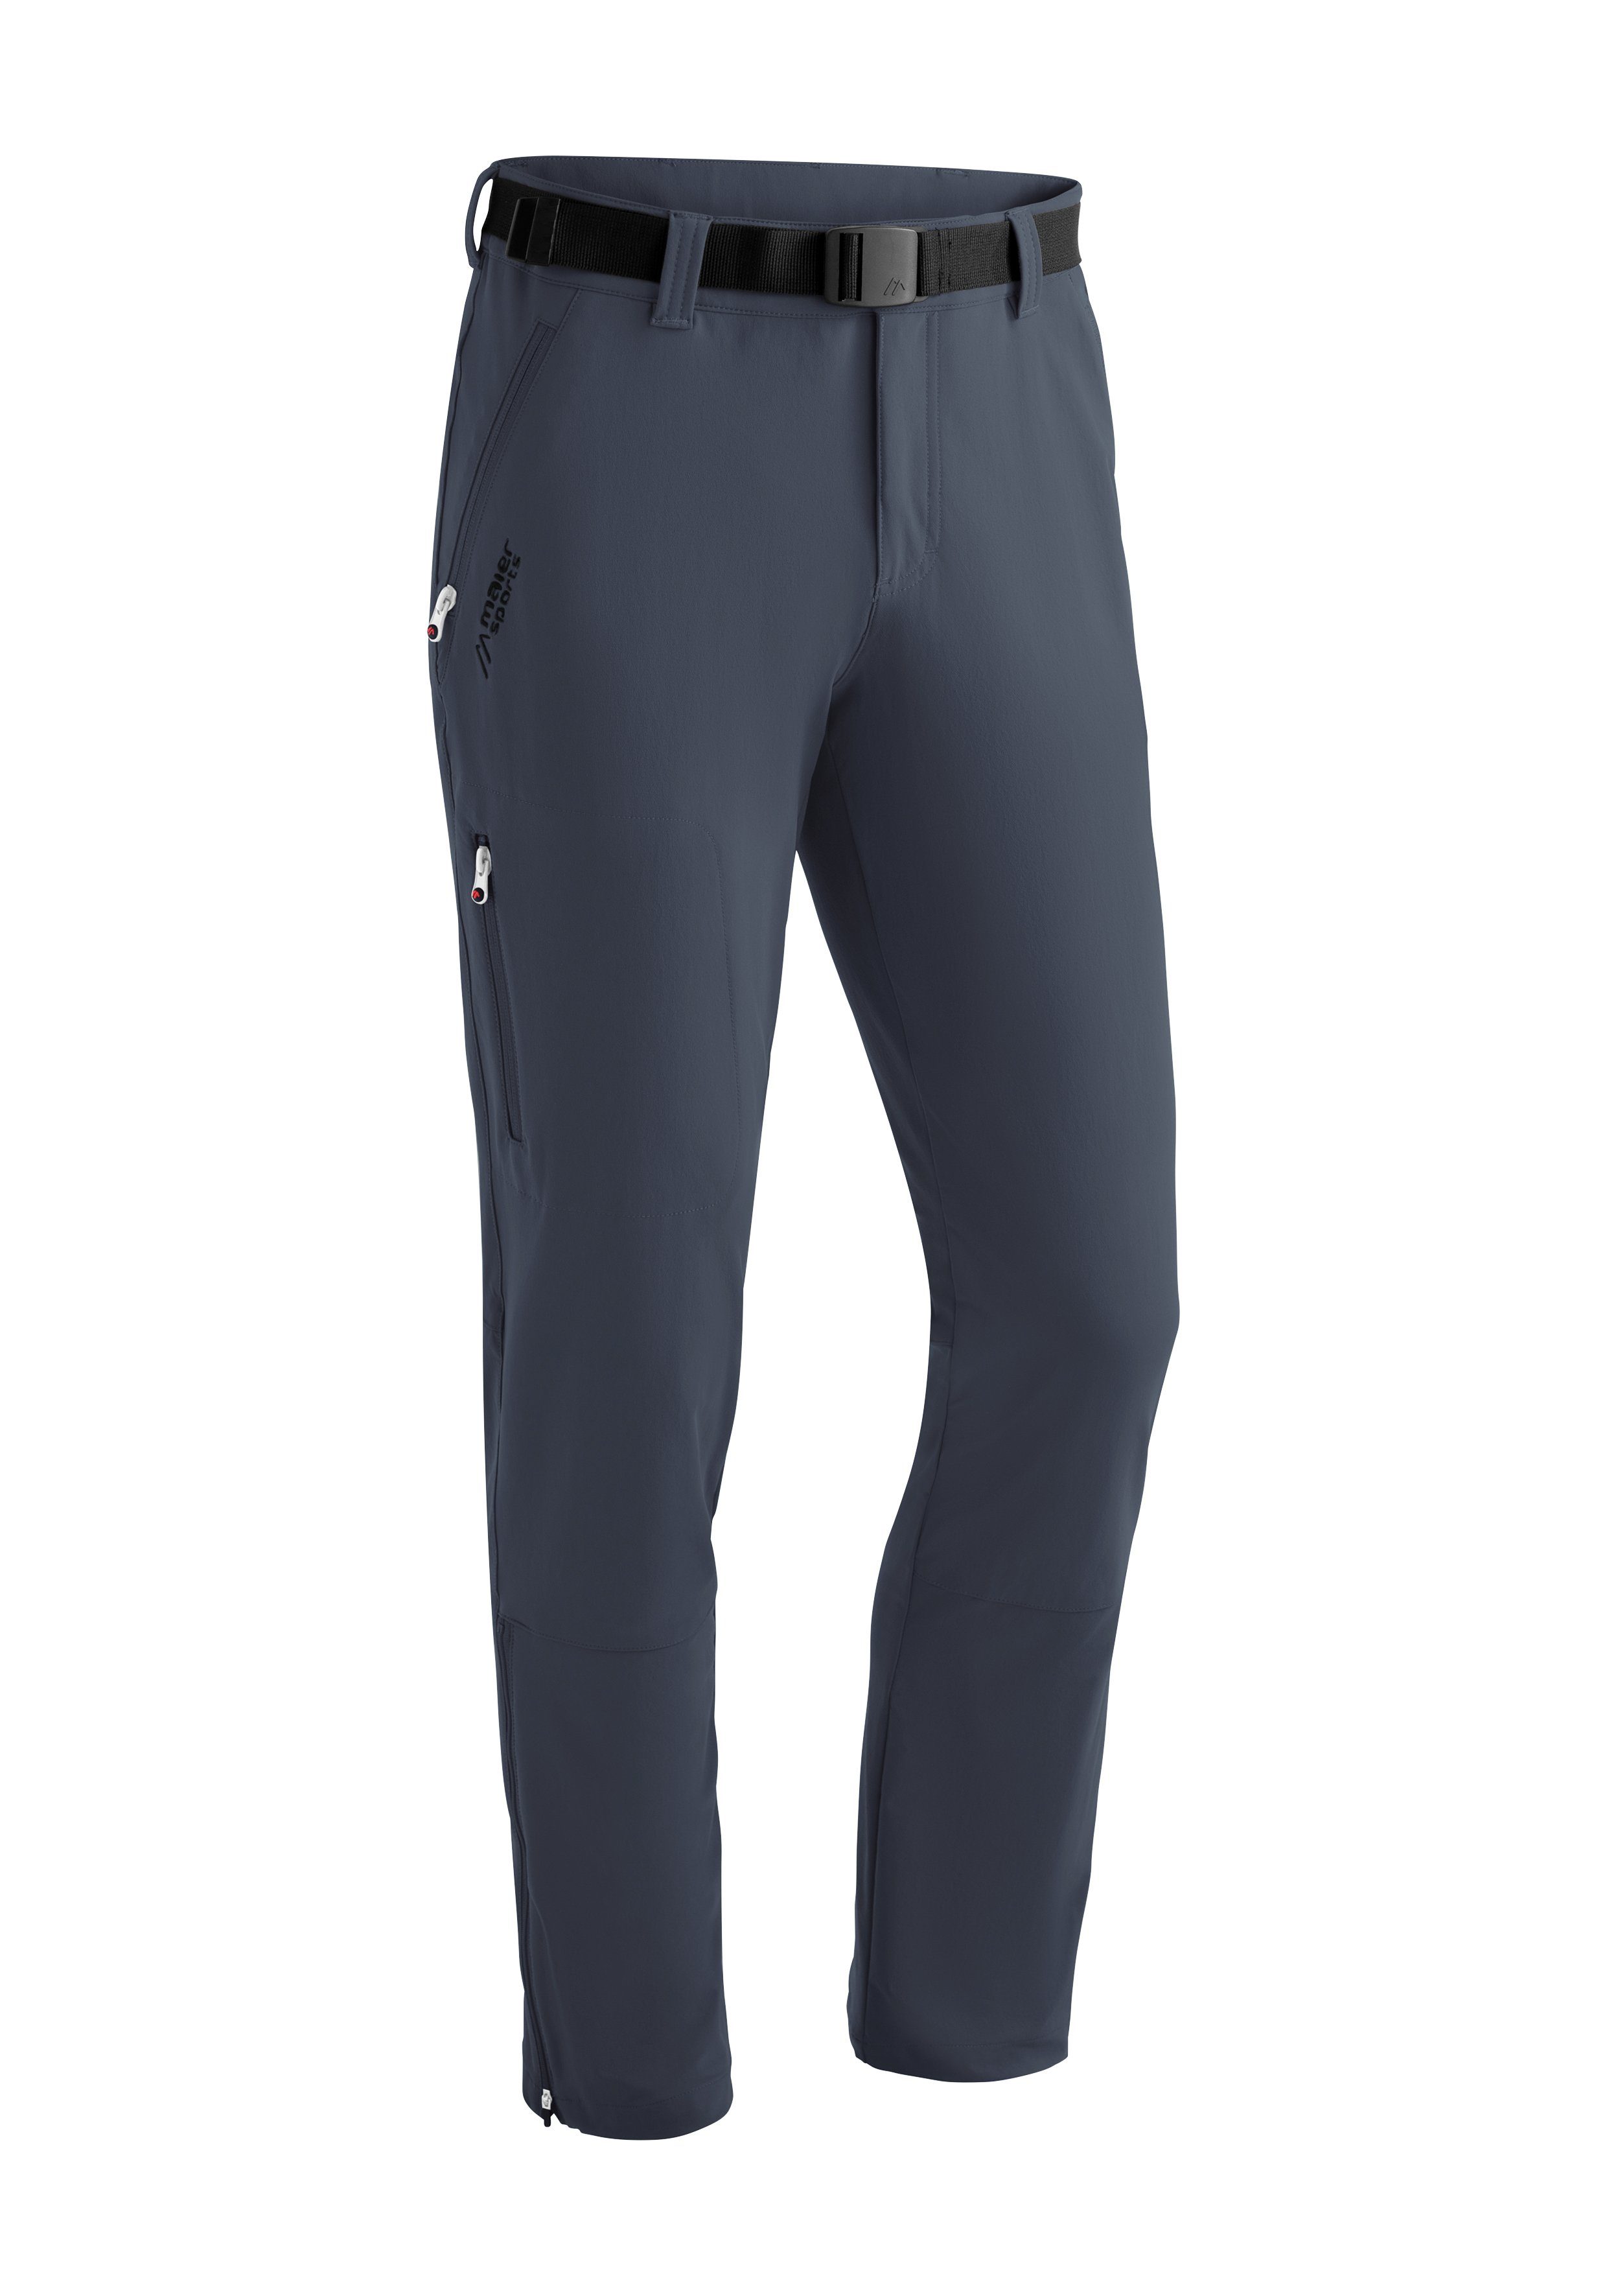 Maier Sports Funktionshose Naturno slim Schmal geschnittene Trekkinghose, elastisch graublau